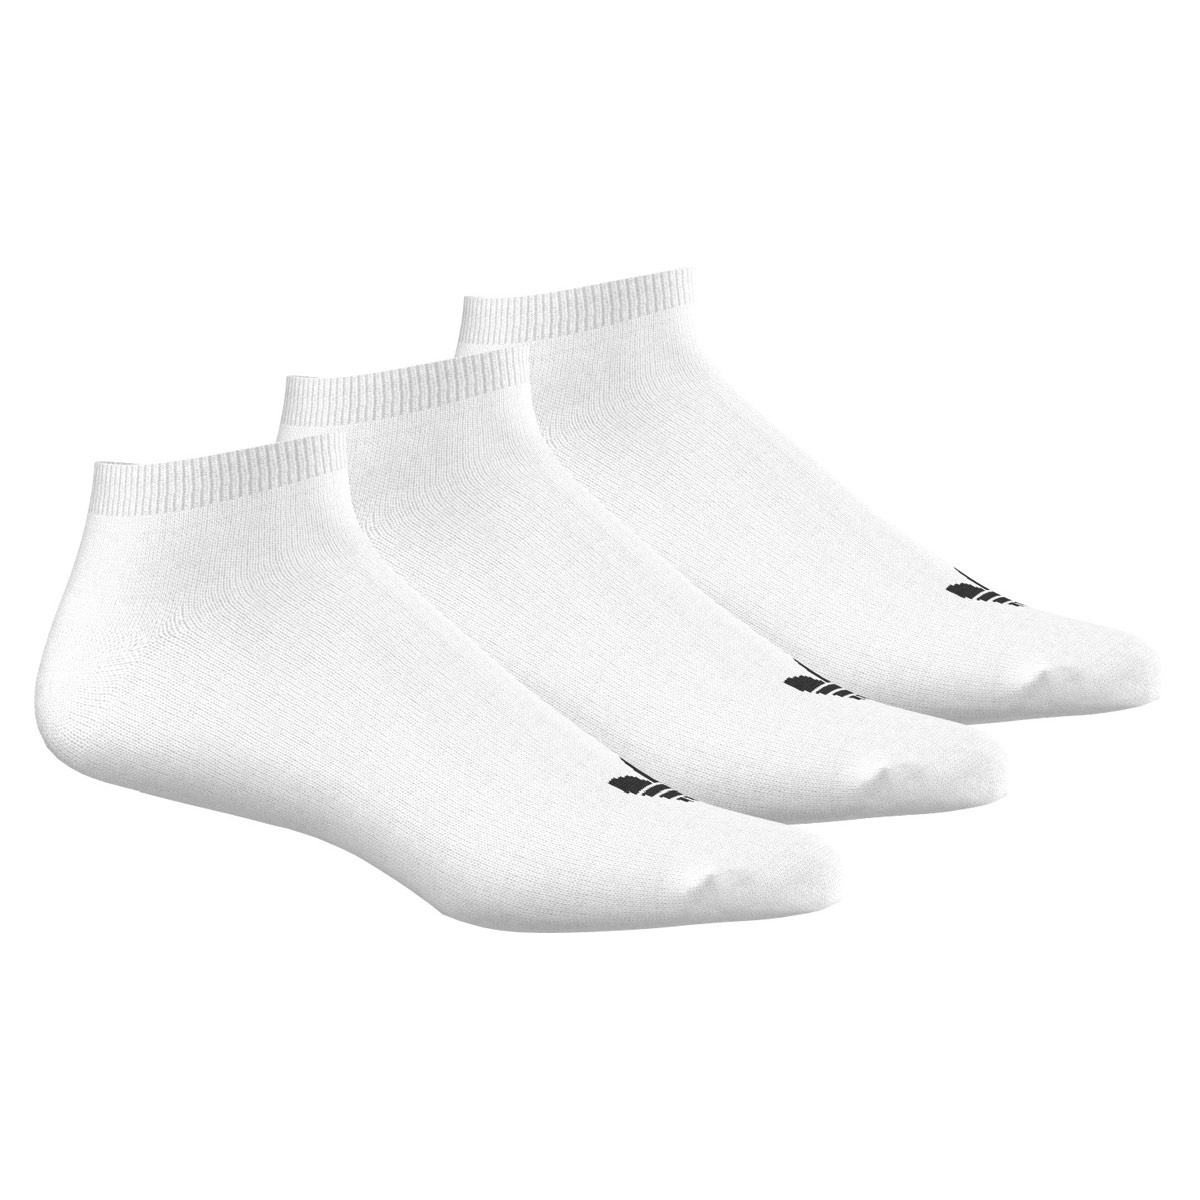 Adidas Originals Trefoil Liner Socken weiß 35-38